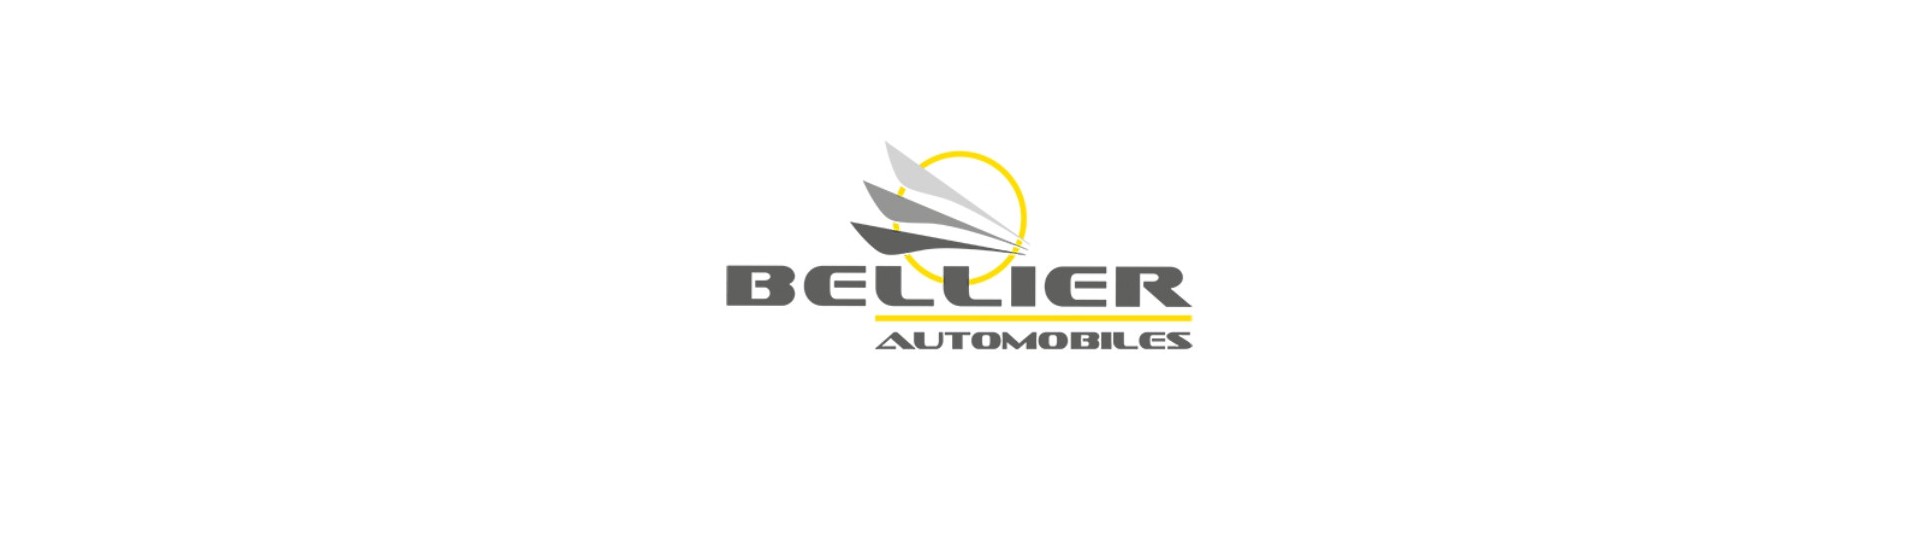 Bromsmätare till bästa pris för bil utan tillstånd Bellier